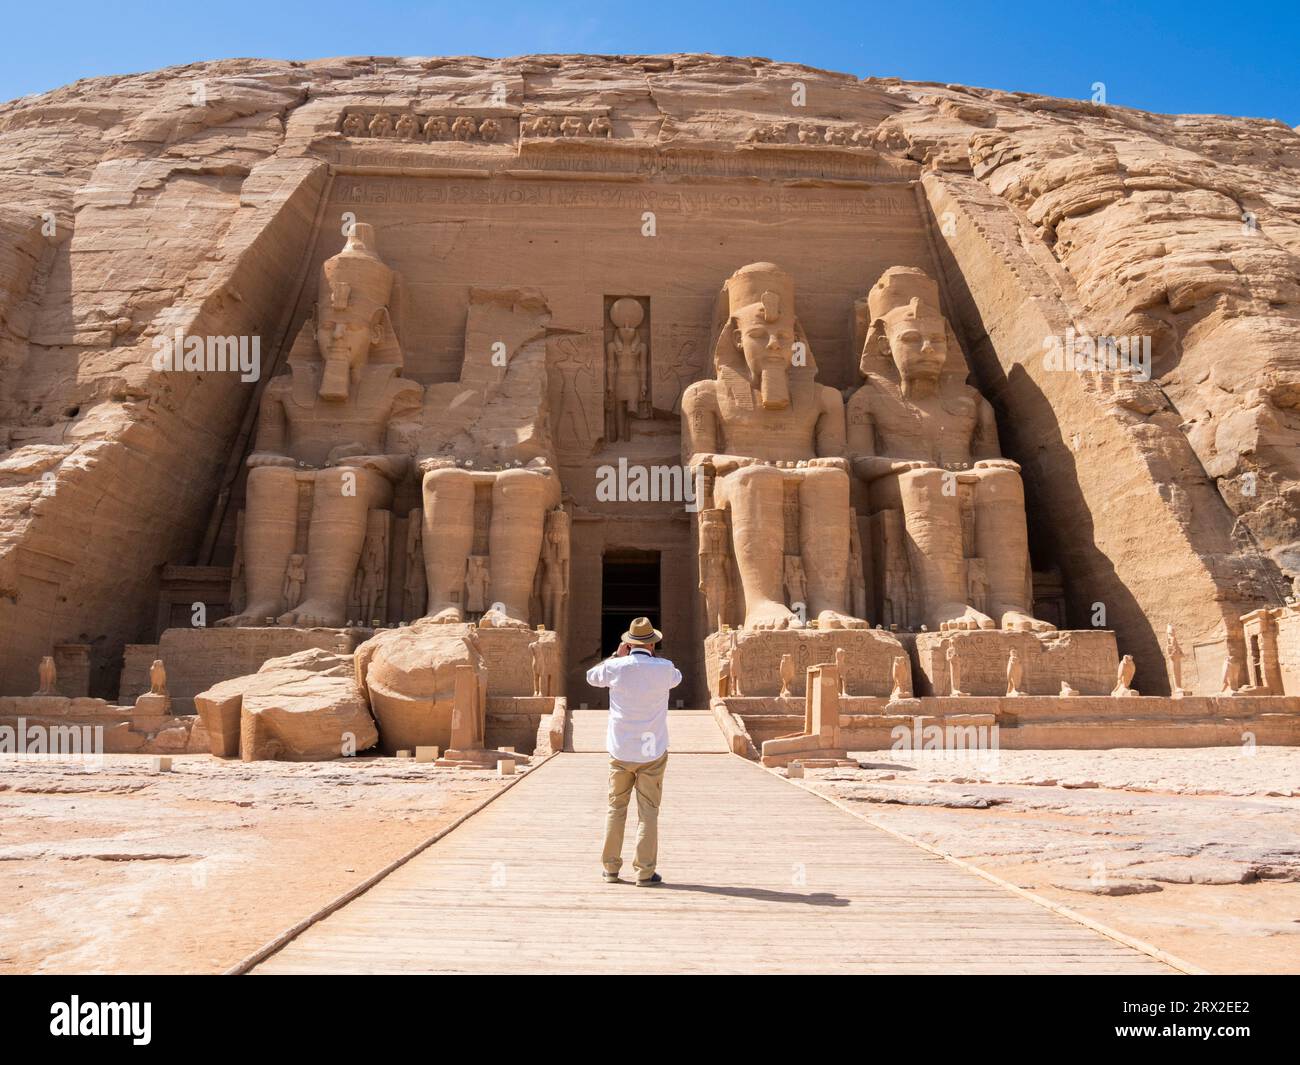 Der große Tempel von Abu Simbel mit seinen vier ikonischen 20 Meter hohen, sitzenden kolossalen Statuen von Ramses II. (Ramses der große), Abu Simbel, Ägypten Stockfoto